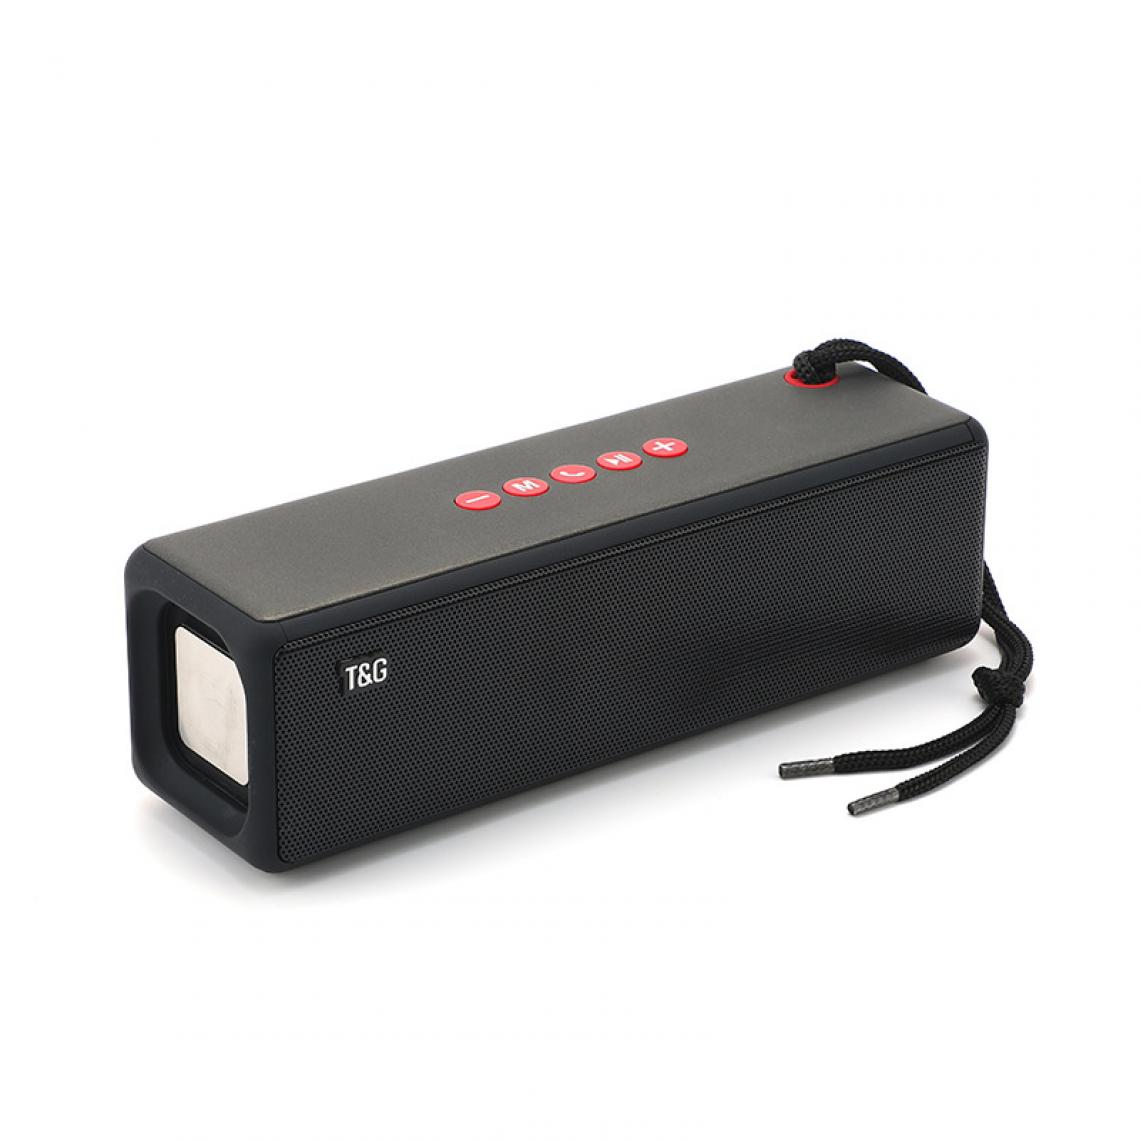 Universal - Haut-parleur Bluetooth sans fil Portable Outdoor Subwoofer Support imperméable TF USB Auxiliary Computer Subwoofer | Haut-parleur portable (noir) - Enceinte PC